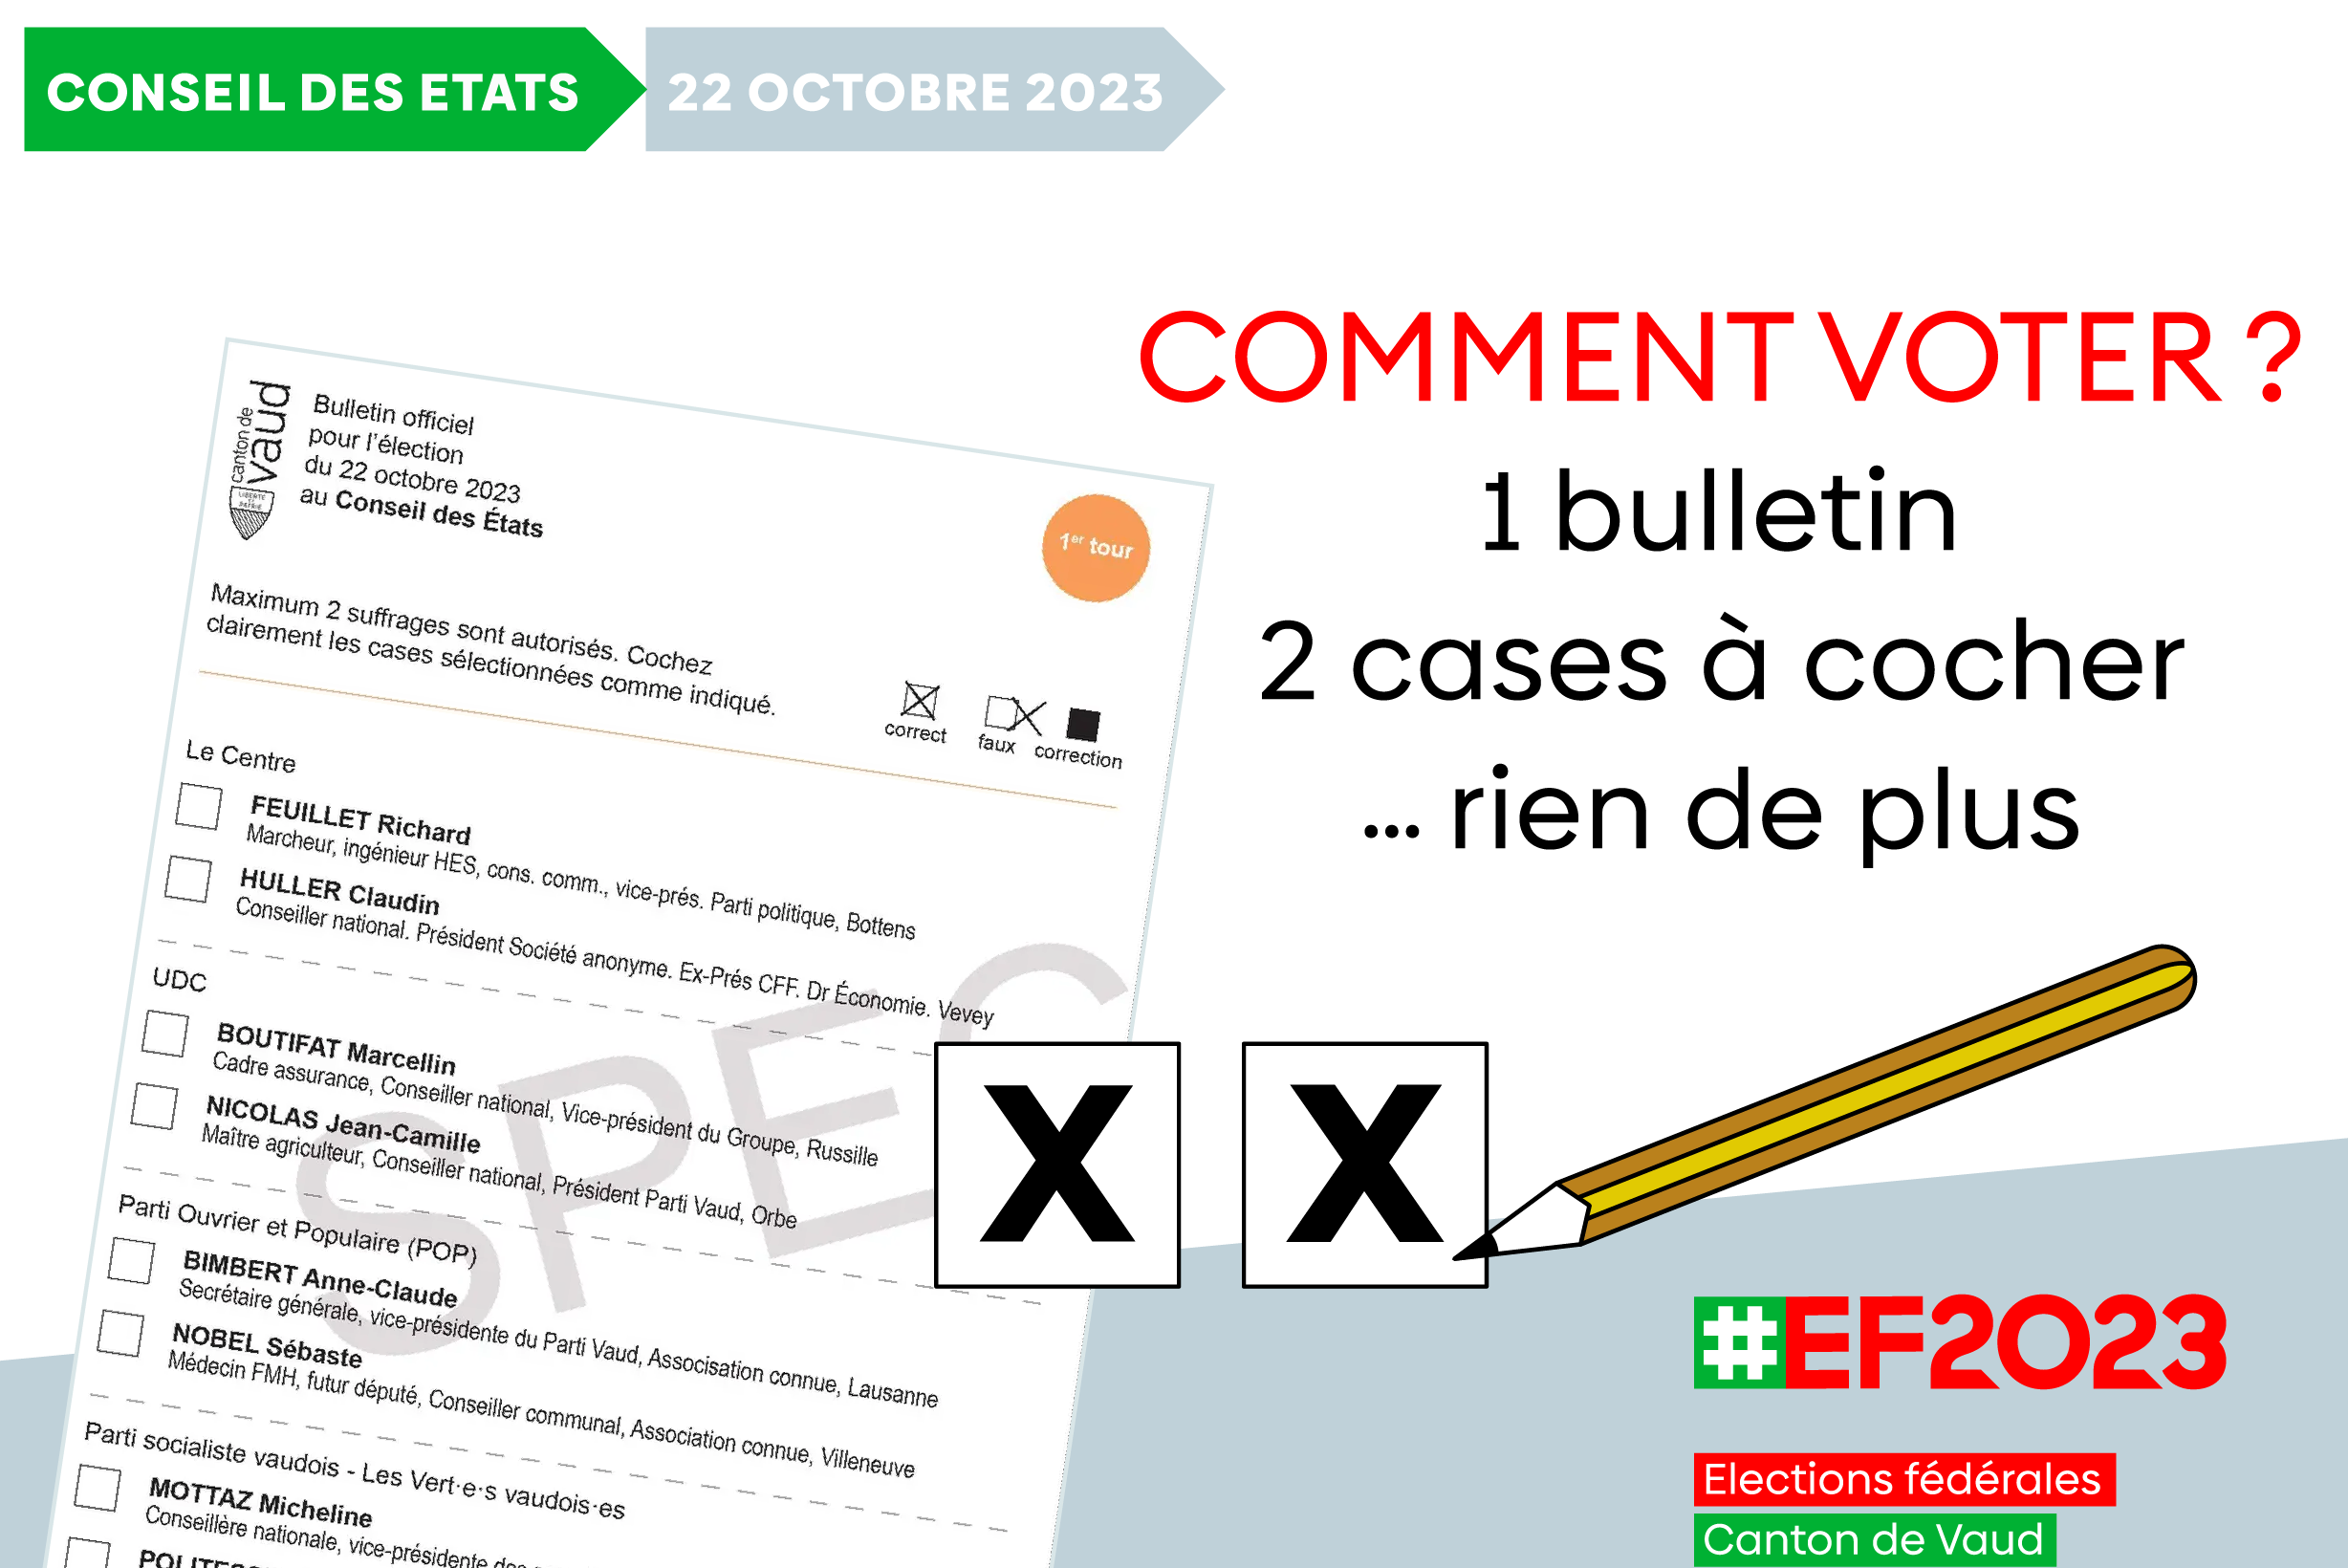 Reproduction du nouveau bulletin de vote avec le slogan: "1 bulletin, 2 cases à cocher, rien de plus" (pour le Conseil des Etats).